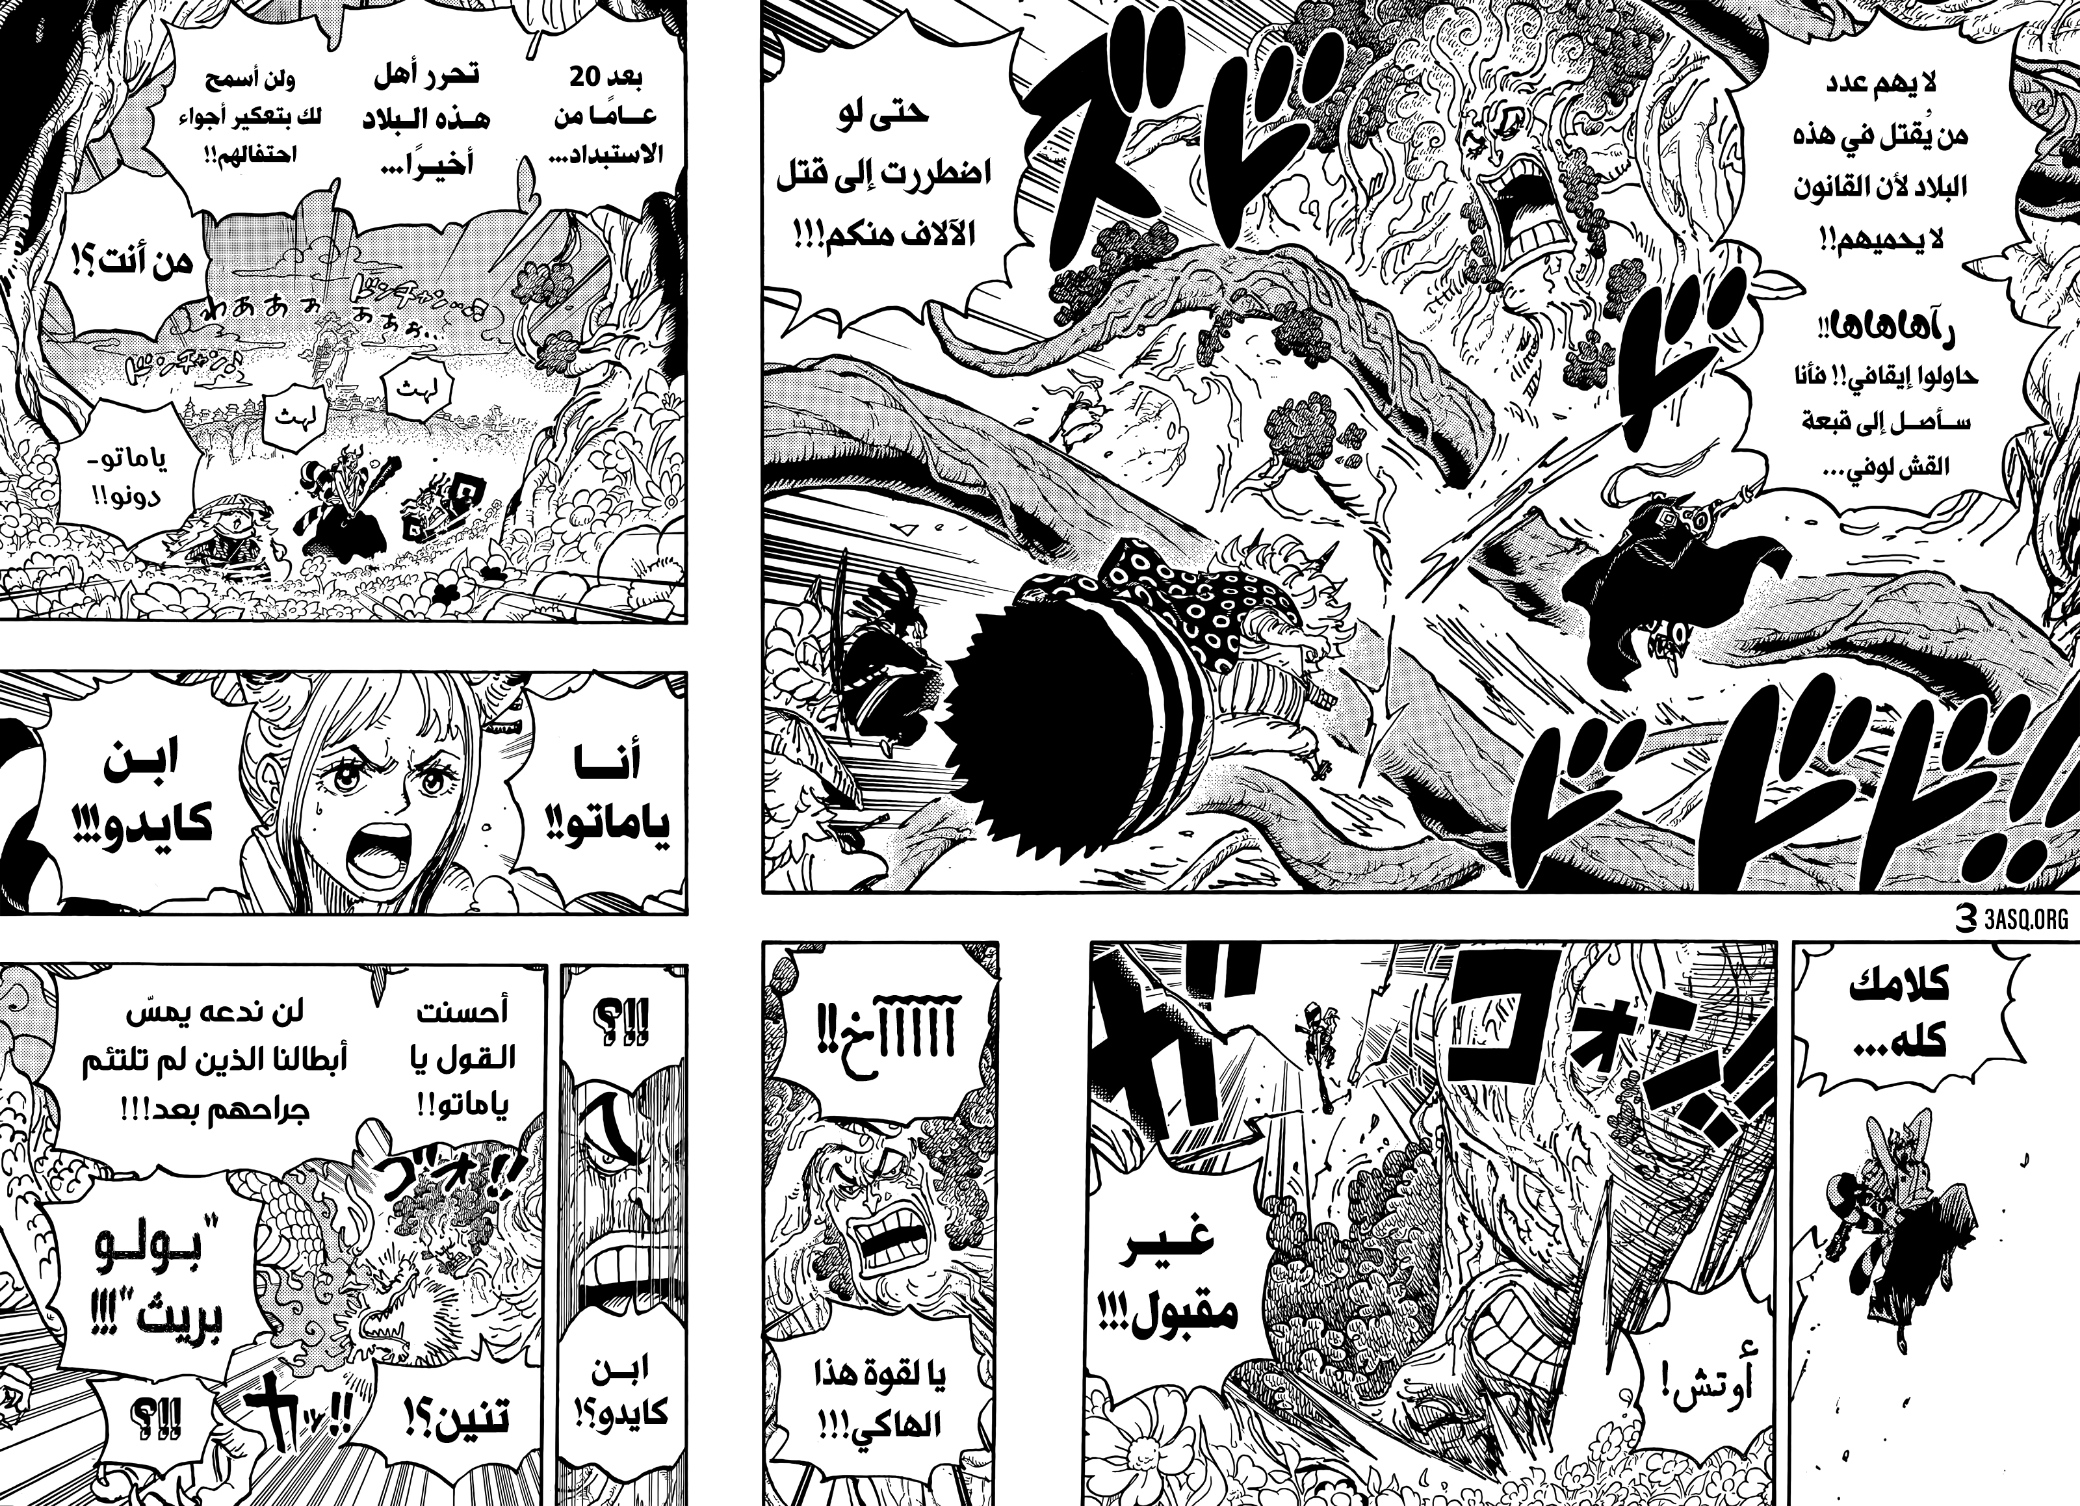 مانجا ون بيس 1054 Manga One Piece اون لاين مترجم هلا مانجا Hala Manga